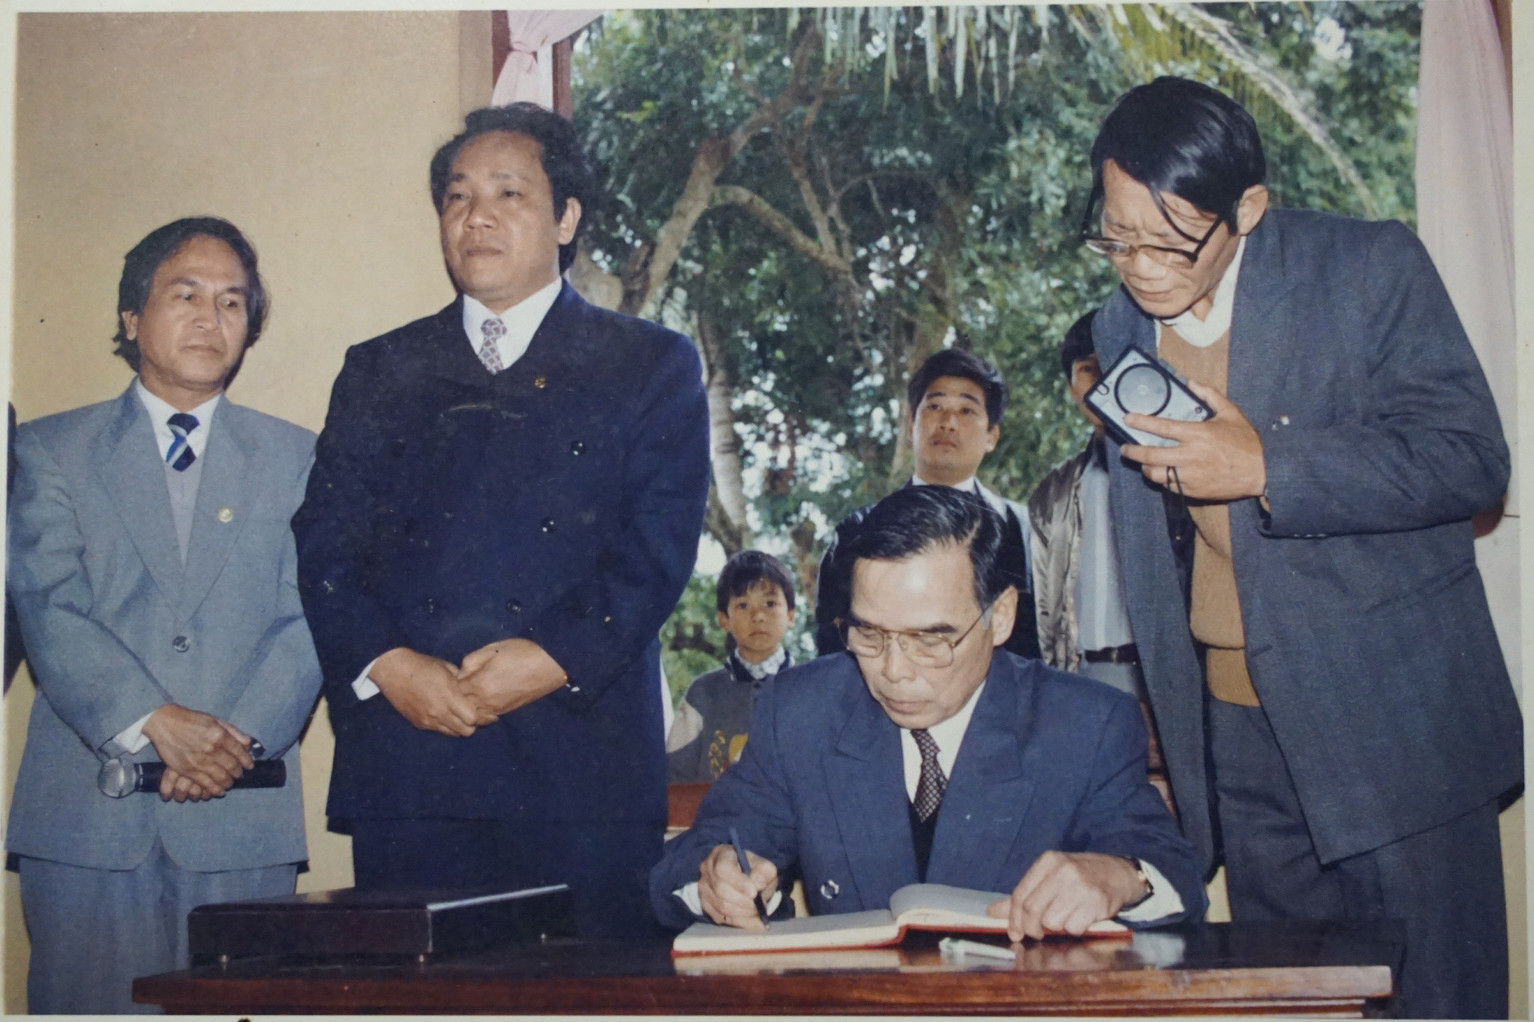 Thủ tướng Phan Văn Khải ghi sổ lưu niệm tại Khu di tích Kim Liên trong lần về thăm và làm việc tại Nghệ An năm 1998 (nhà báo Văn Hiền đứng ngoài cùng bên phải). Ảnh: Sỹ Minh